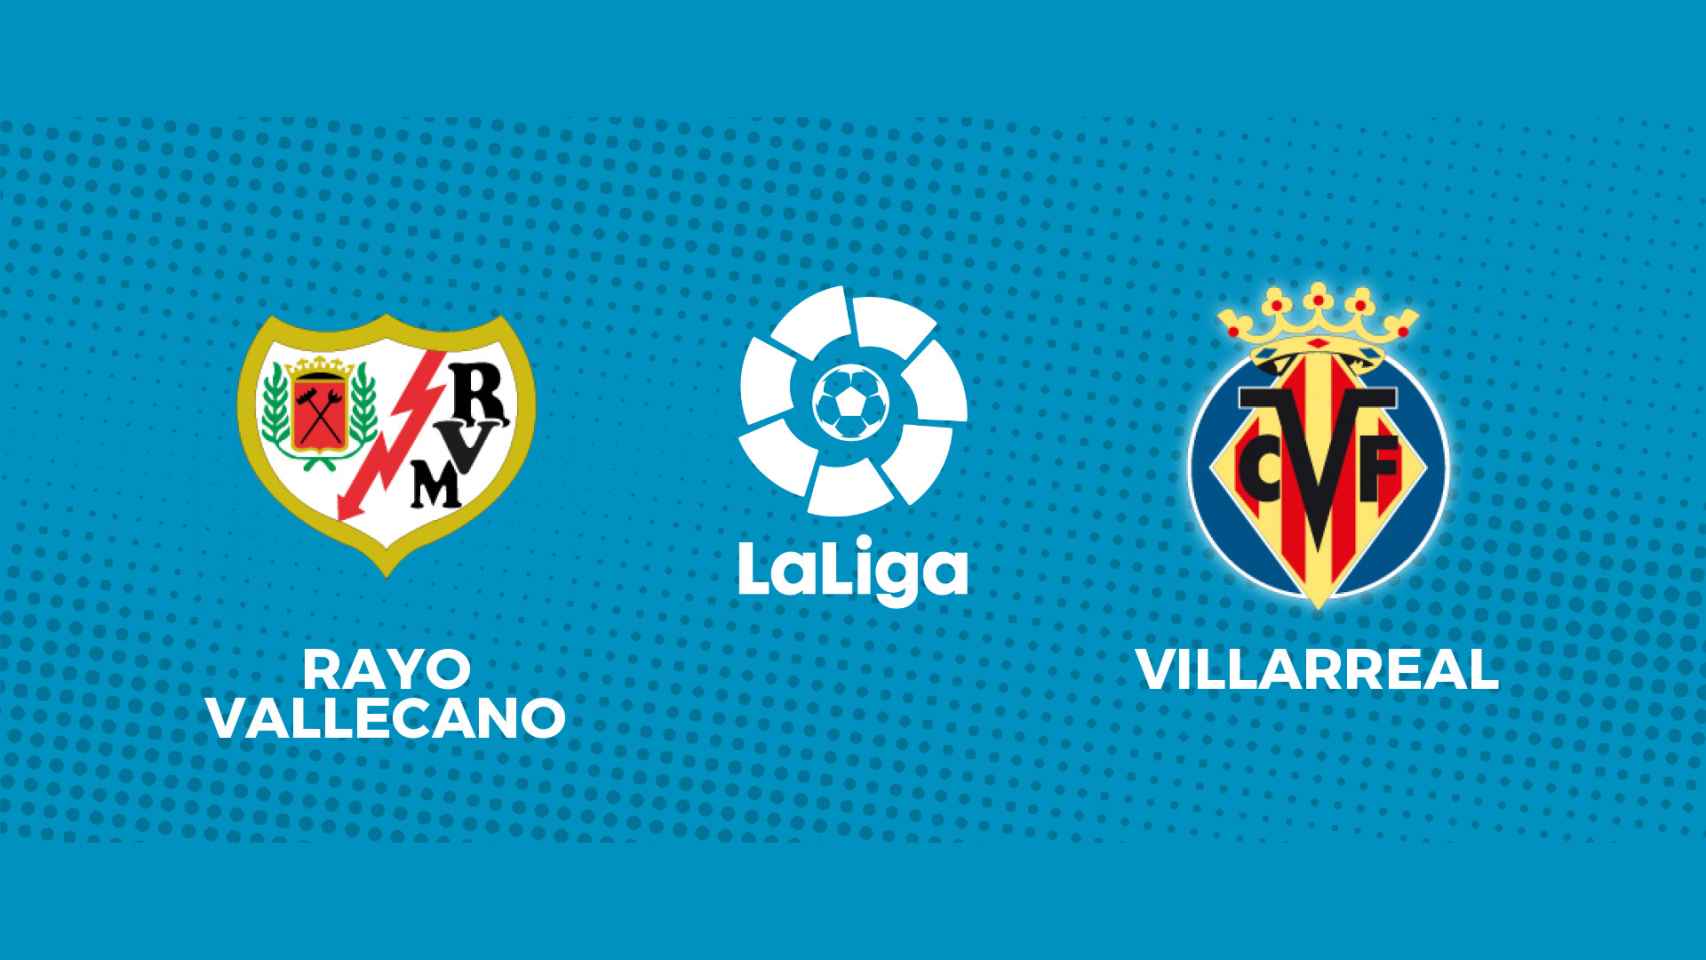 Rayo - Villarreal, La Liga en directo